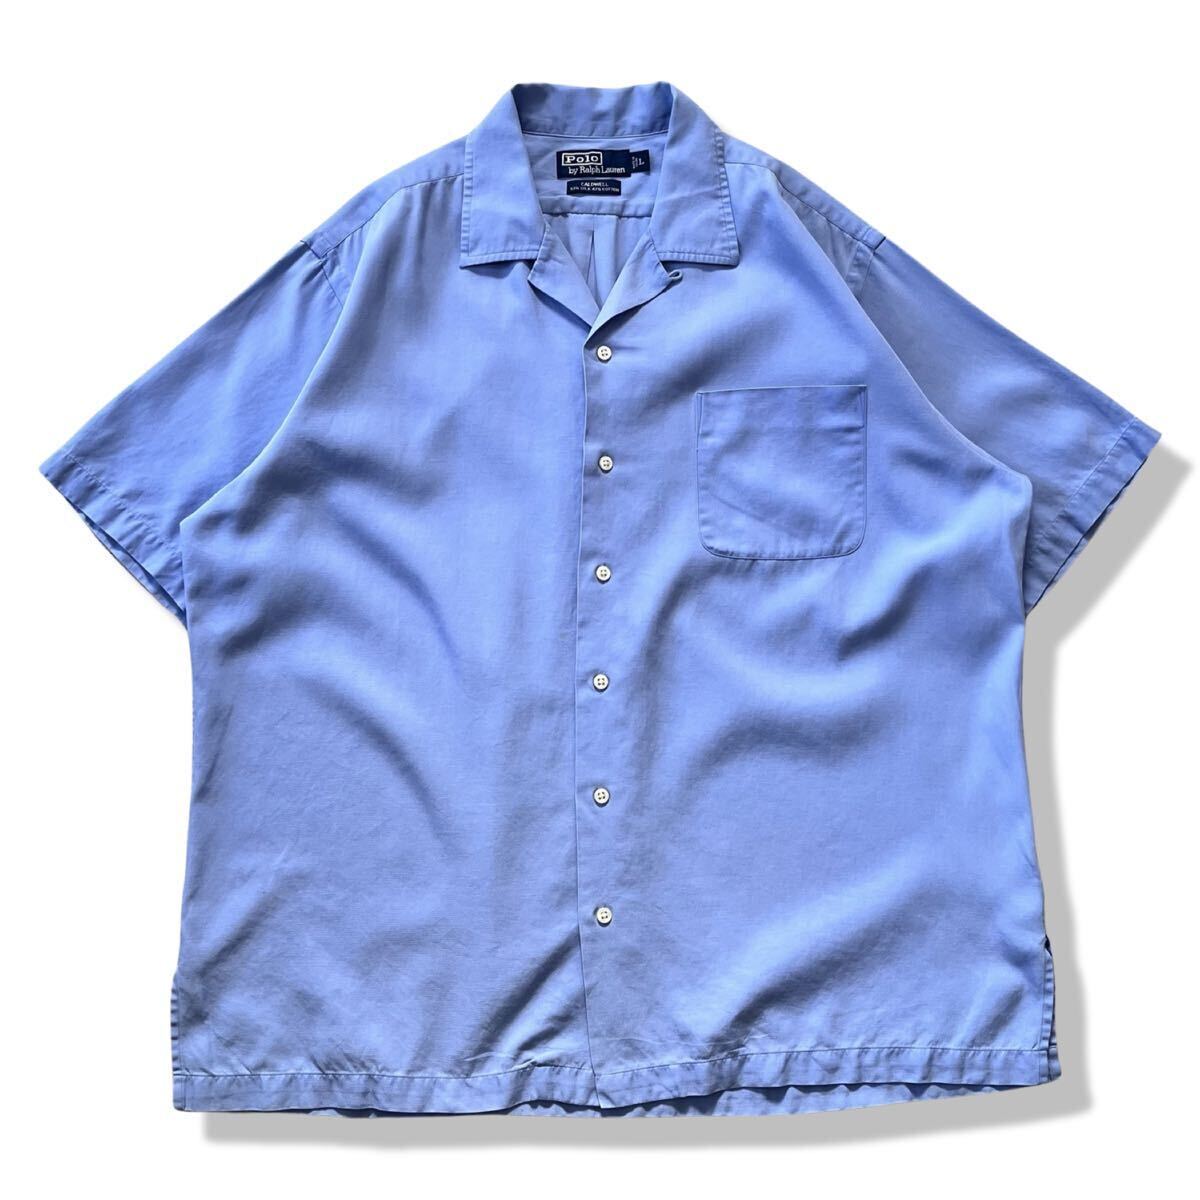 【90s】ポロラルフローレン CALDWELL シルク混 半袖 オープンカラーシャツ サックスブルー L コールドウェル rrl ヴィンテージ 開襟シャツの画像1